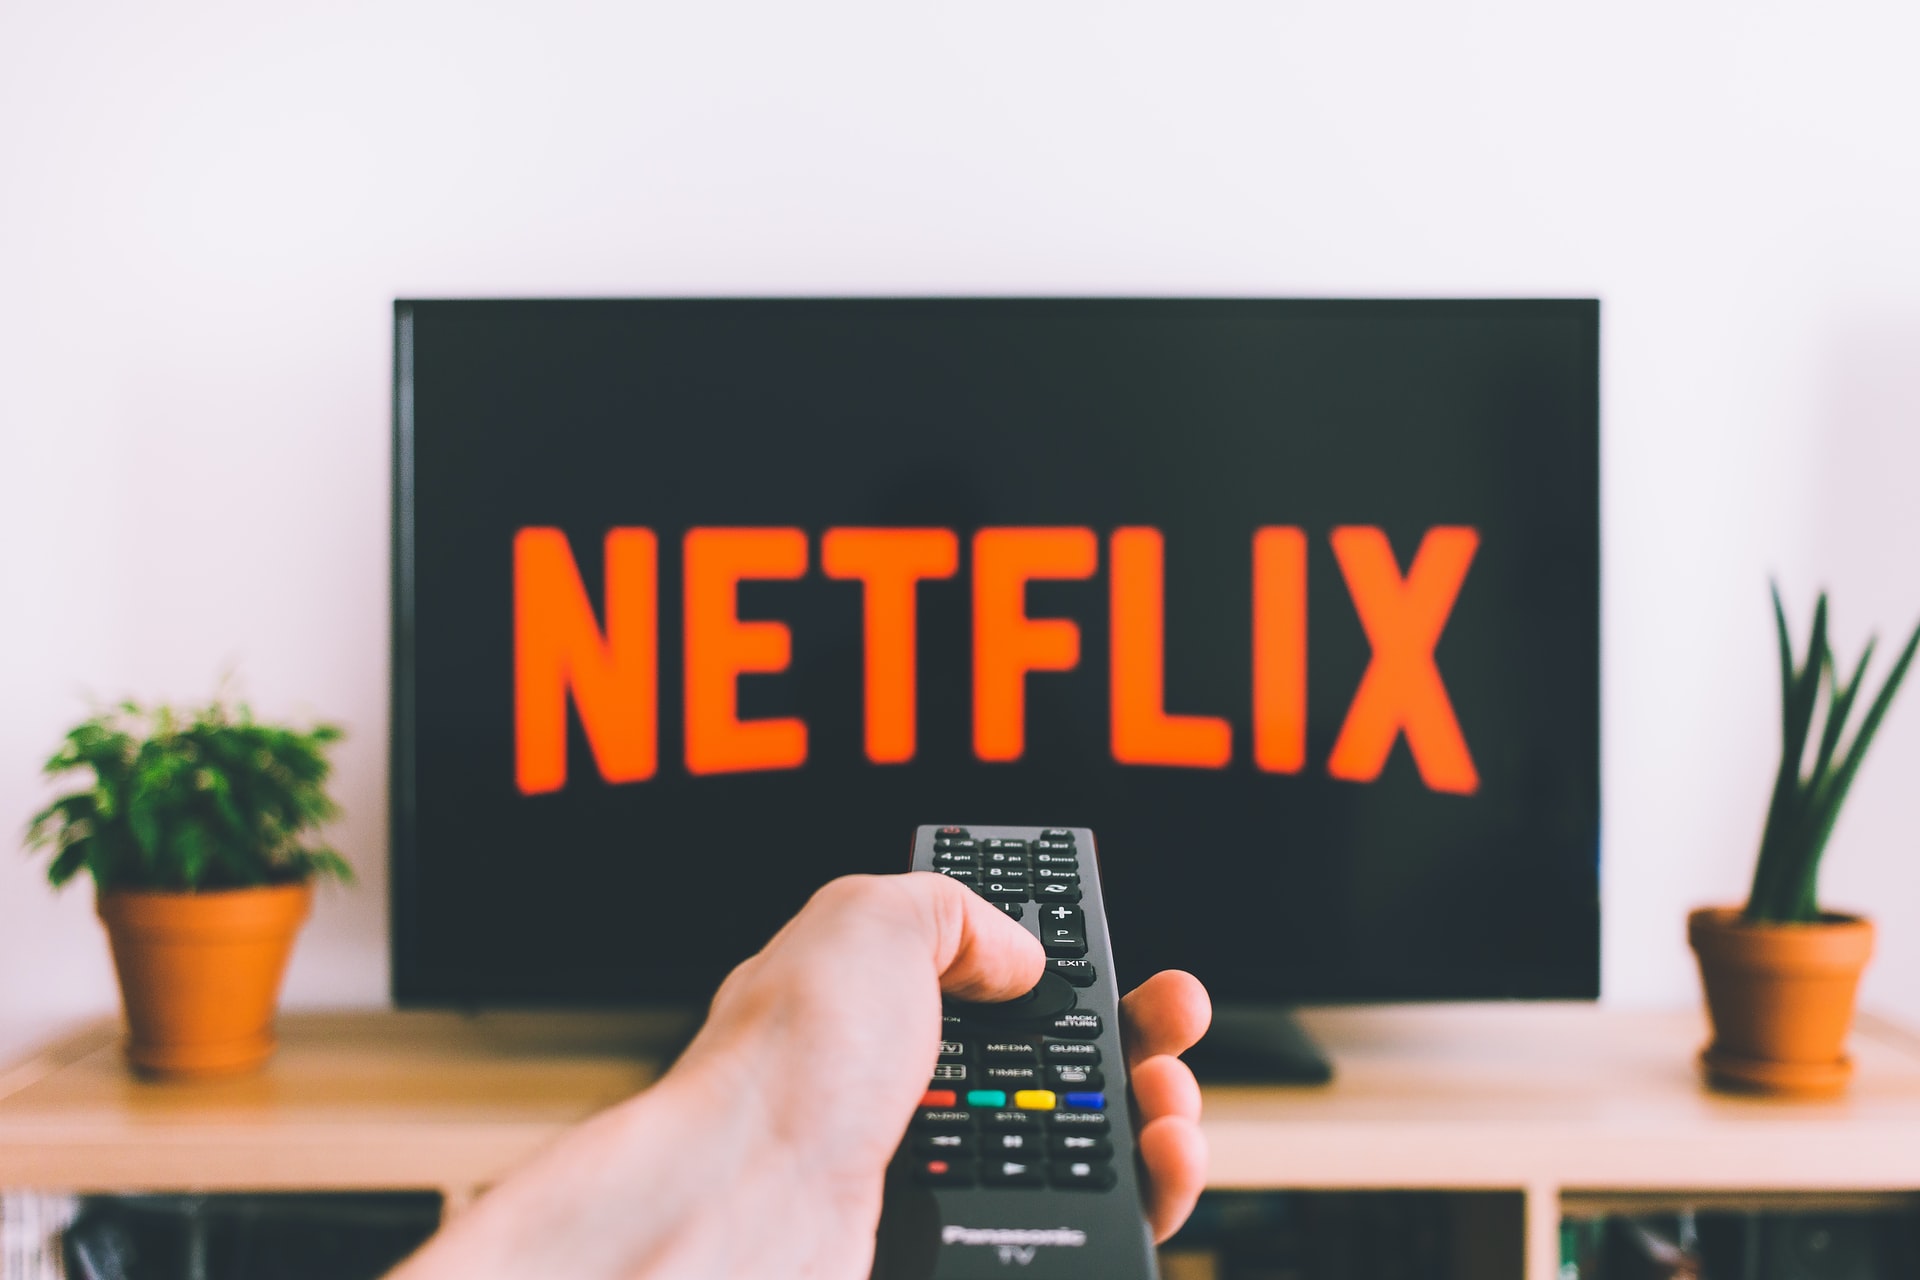 Netflix zam mı geldi 2022? Netflix abonelik ücreti ne kadar temel, standart, özel paket? İşte yeni fiyat, ücret listesi